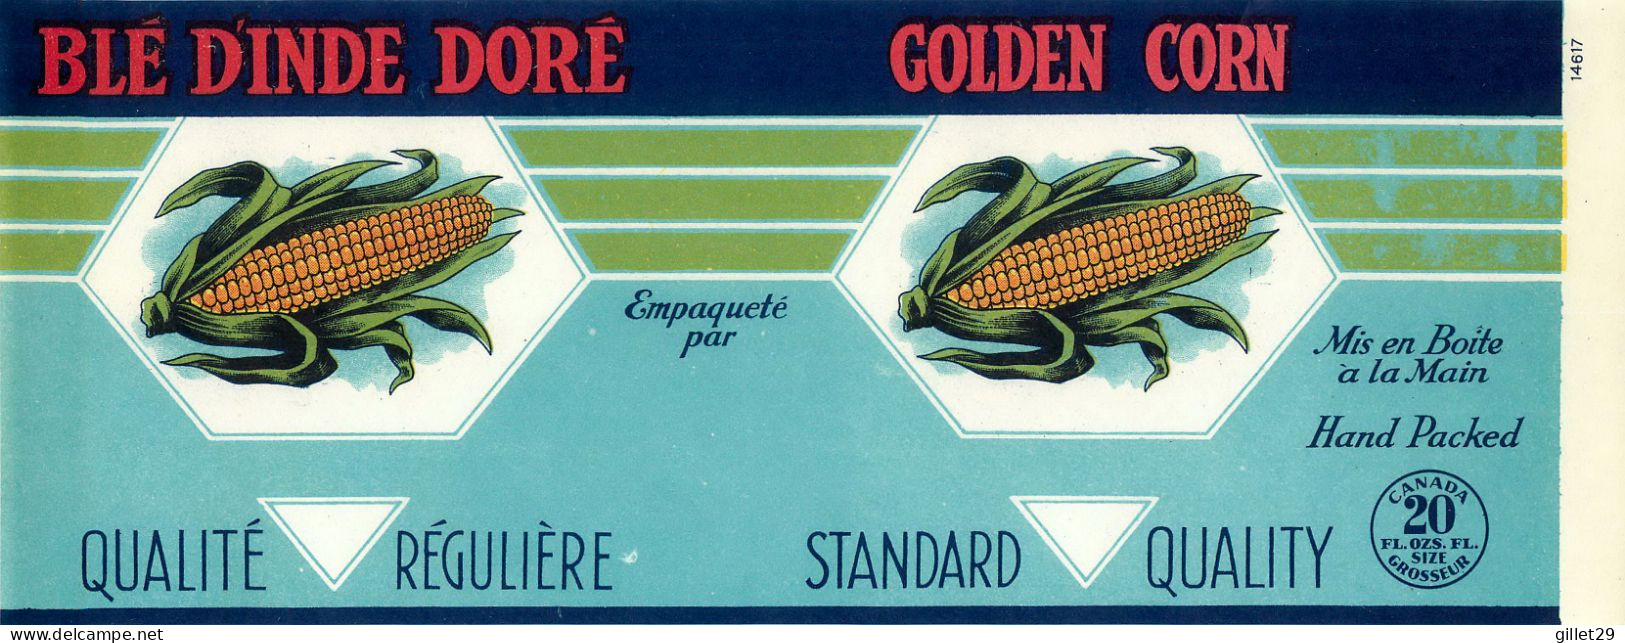 ÉTIQUETTES - BLÉ D'INDE DORÉ - GOLDEN CORN - 20 OZS CANADA - DIMENSION 11 X 27 Cm - - Fruits & Vegetables